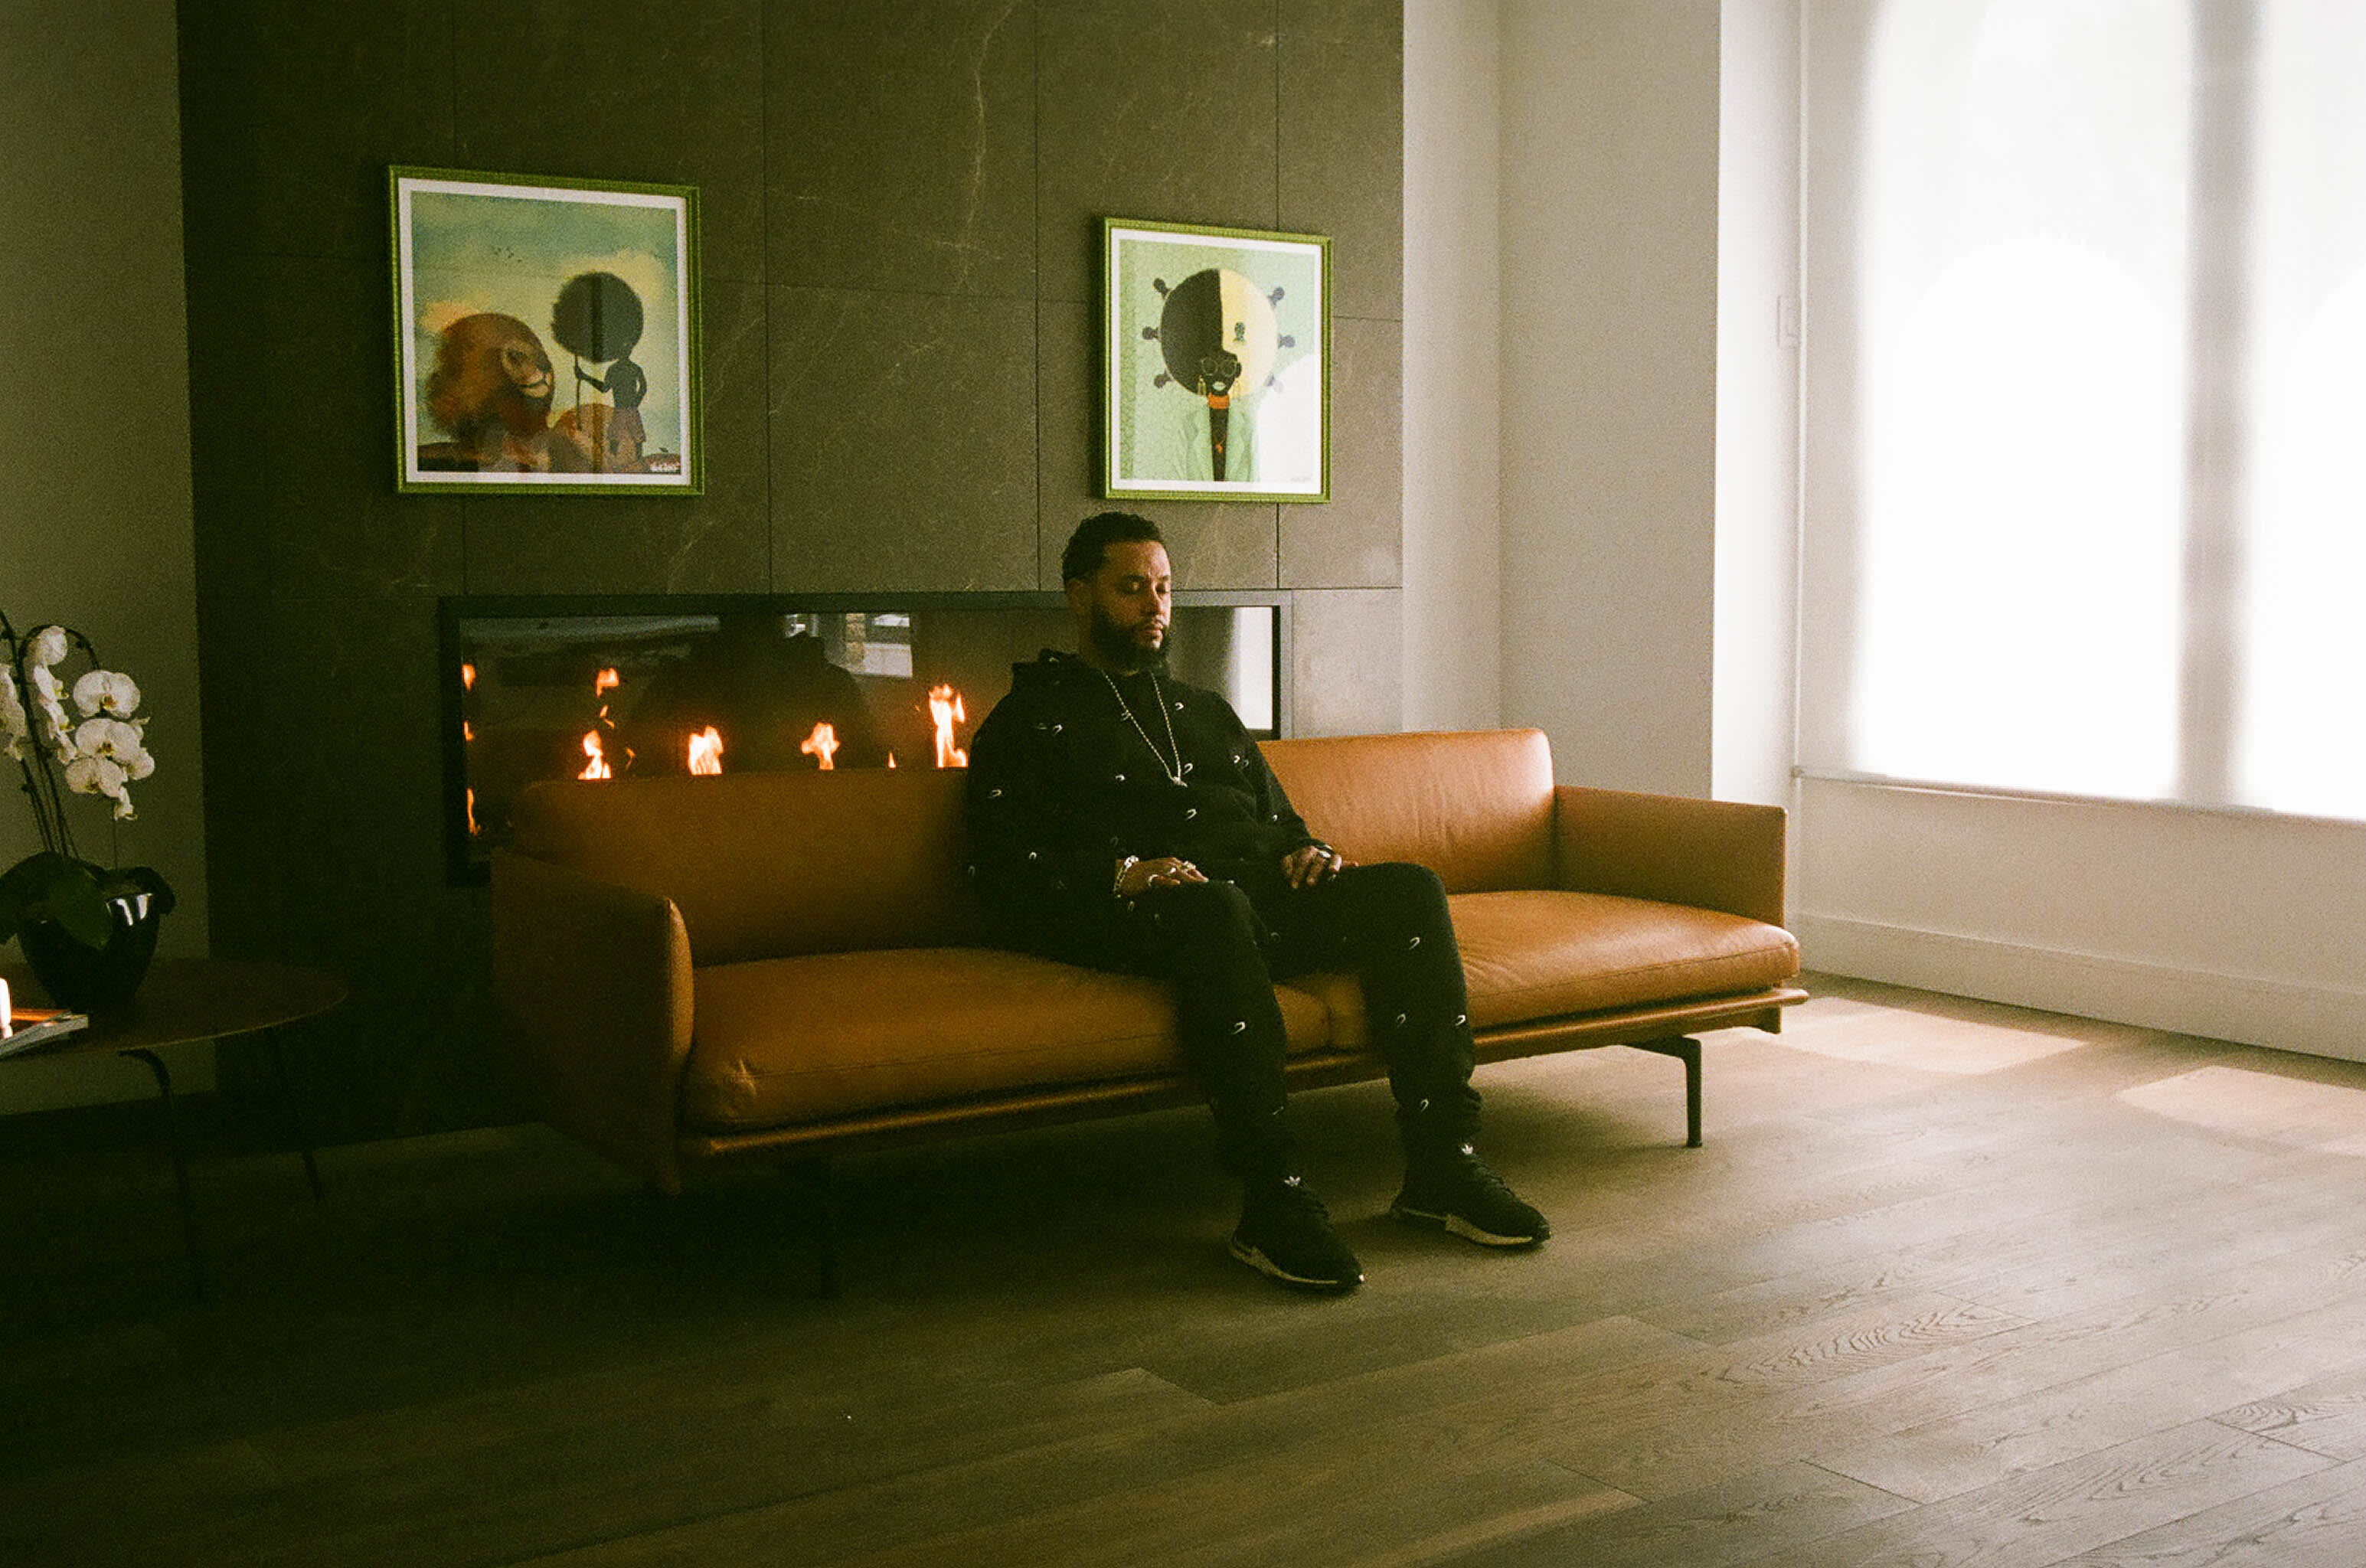 Director X sitting on a sofa